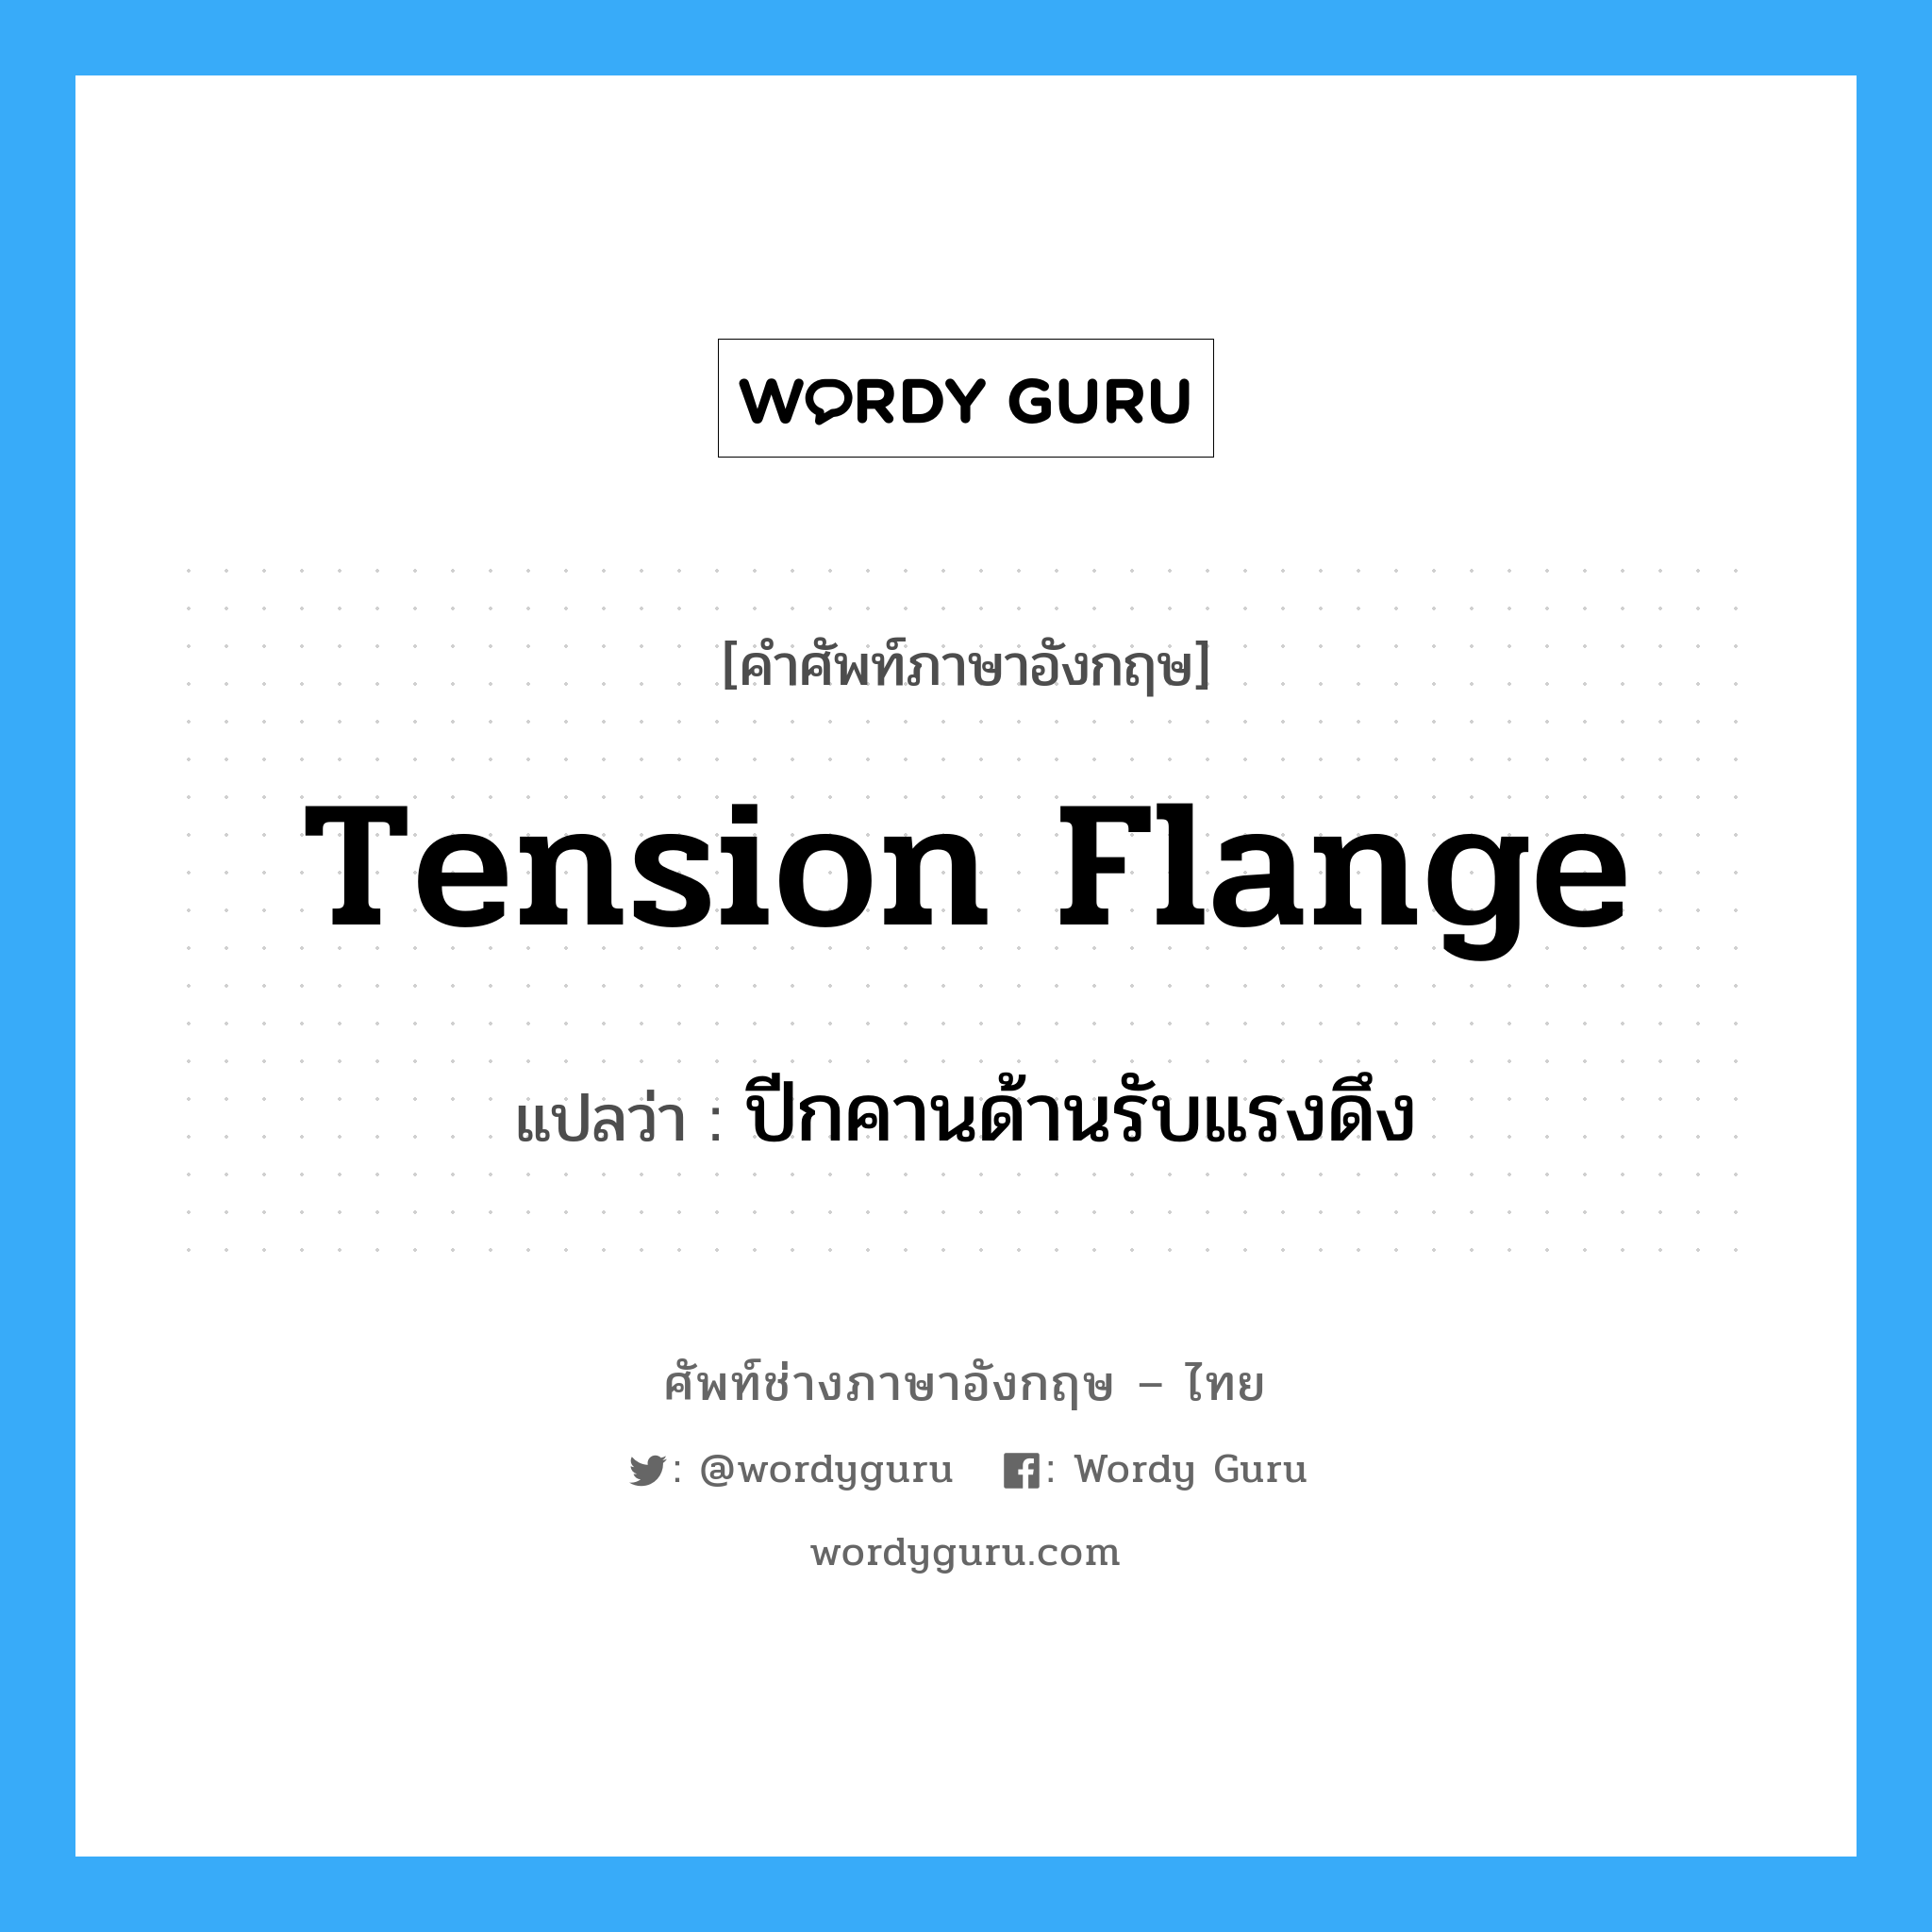 tension flange แปลว่า?, คำศัพท์ช่างภาษาอังกฤษ - ไทย tension flange คำศัพท์ภาษาอังกฤษ tension flange แปลว่า ปีกคานด้านรับแรงดึง